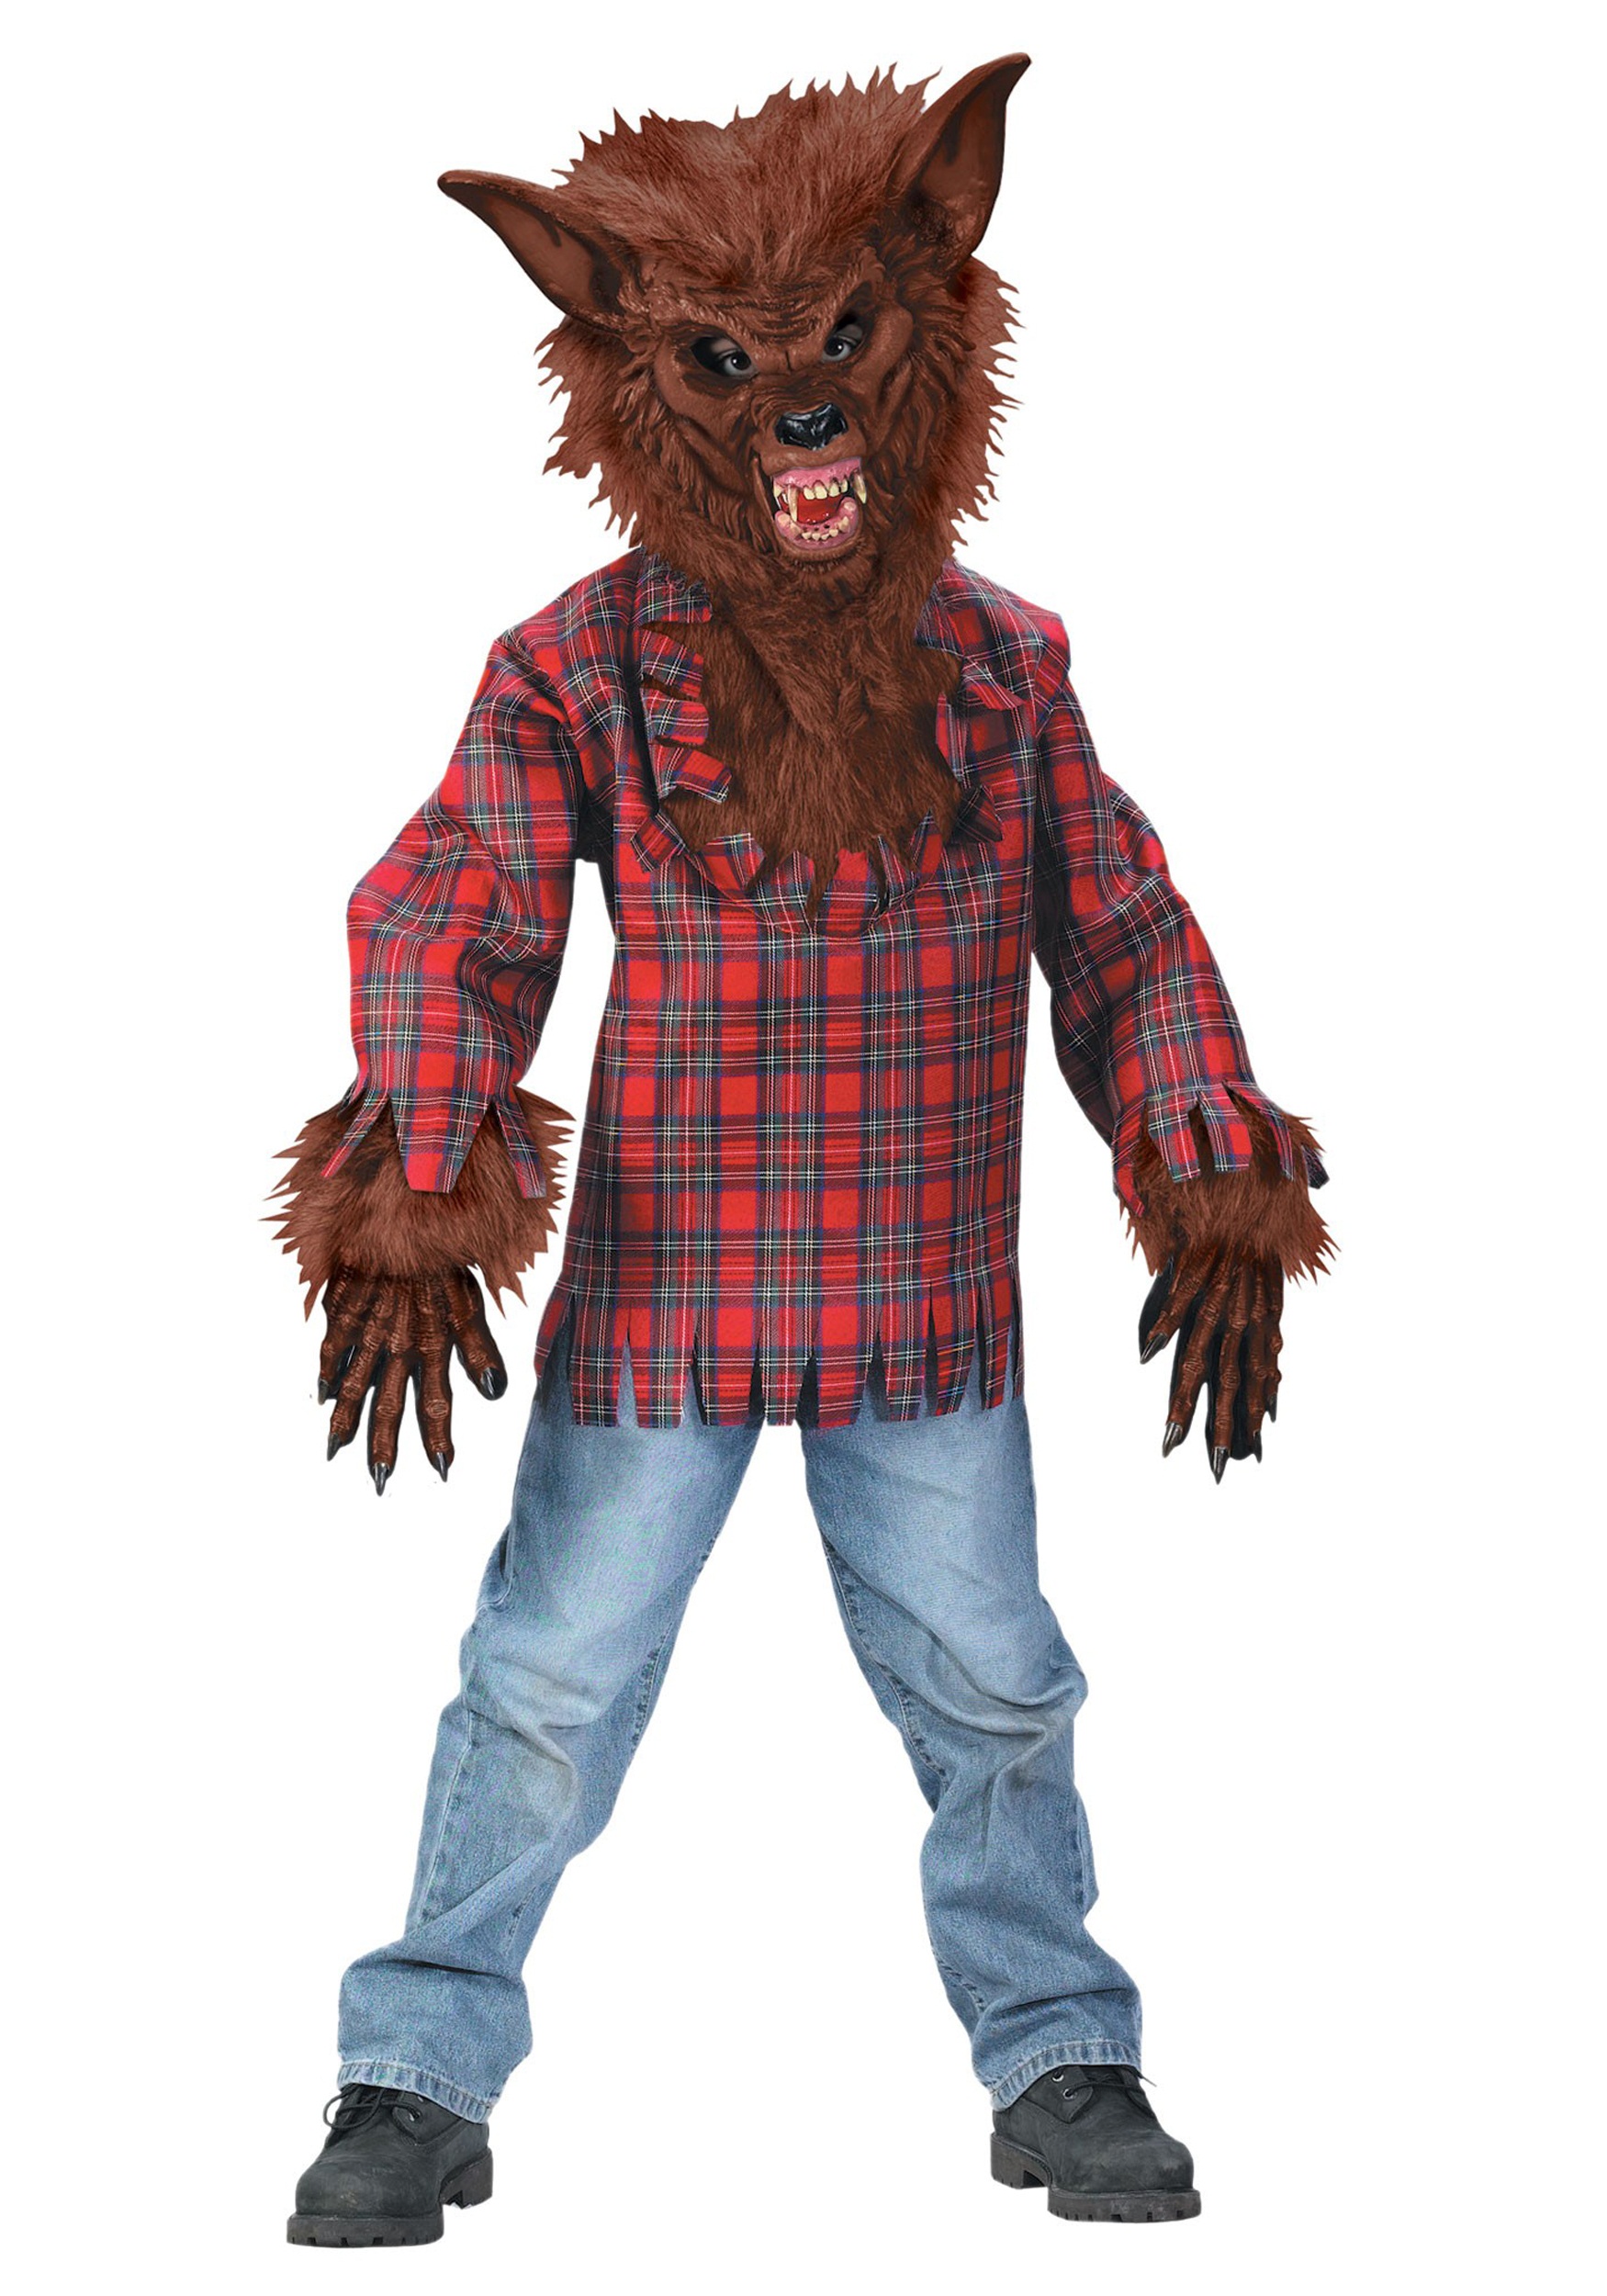 Photos - Fancy Dress Fun World Kid's Werewolf Costume Brown/Red FU5813BR